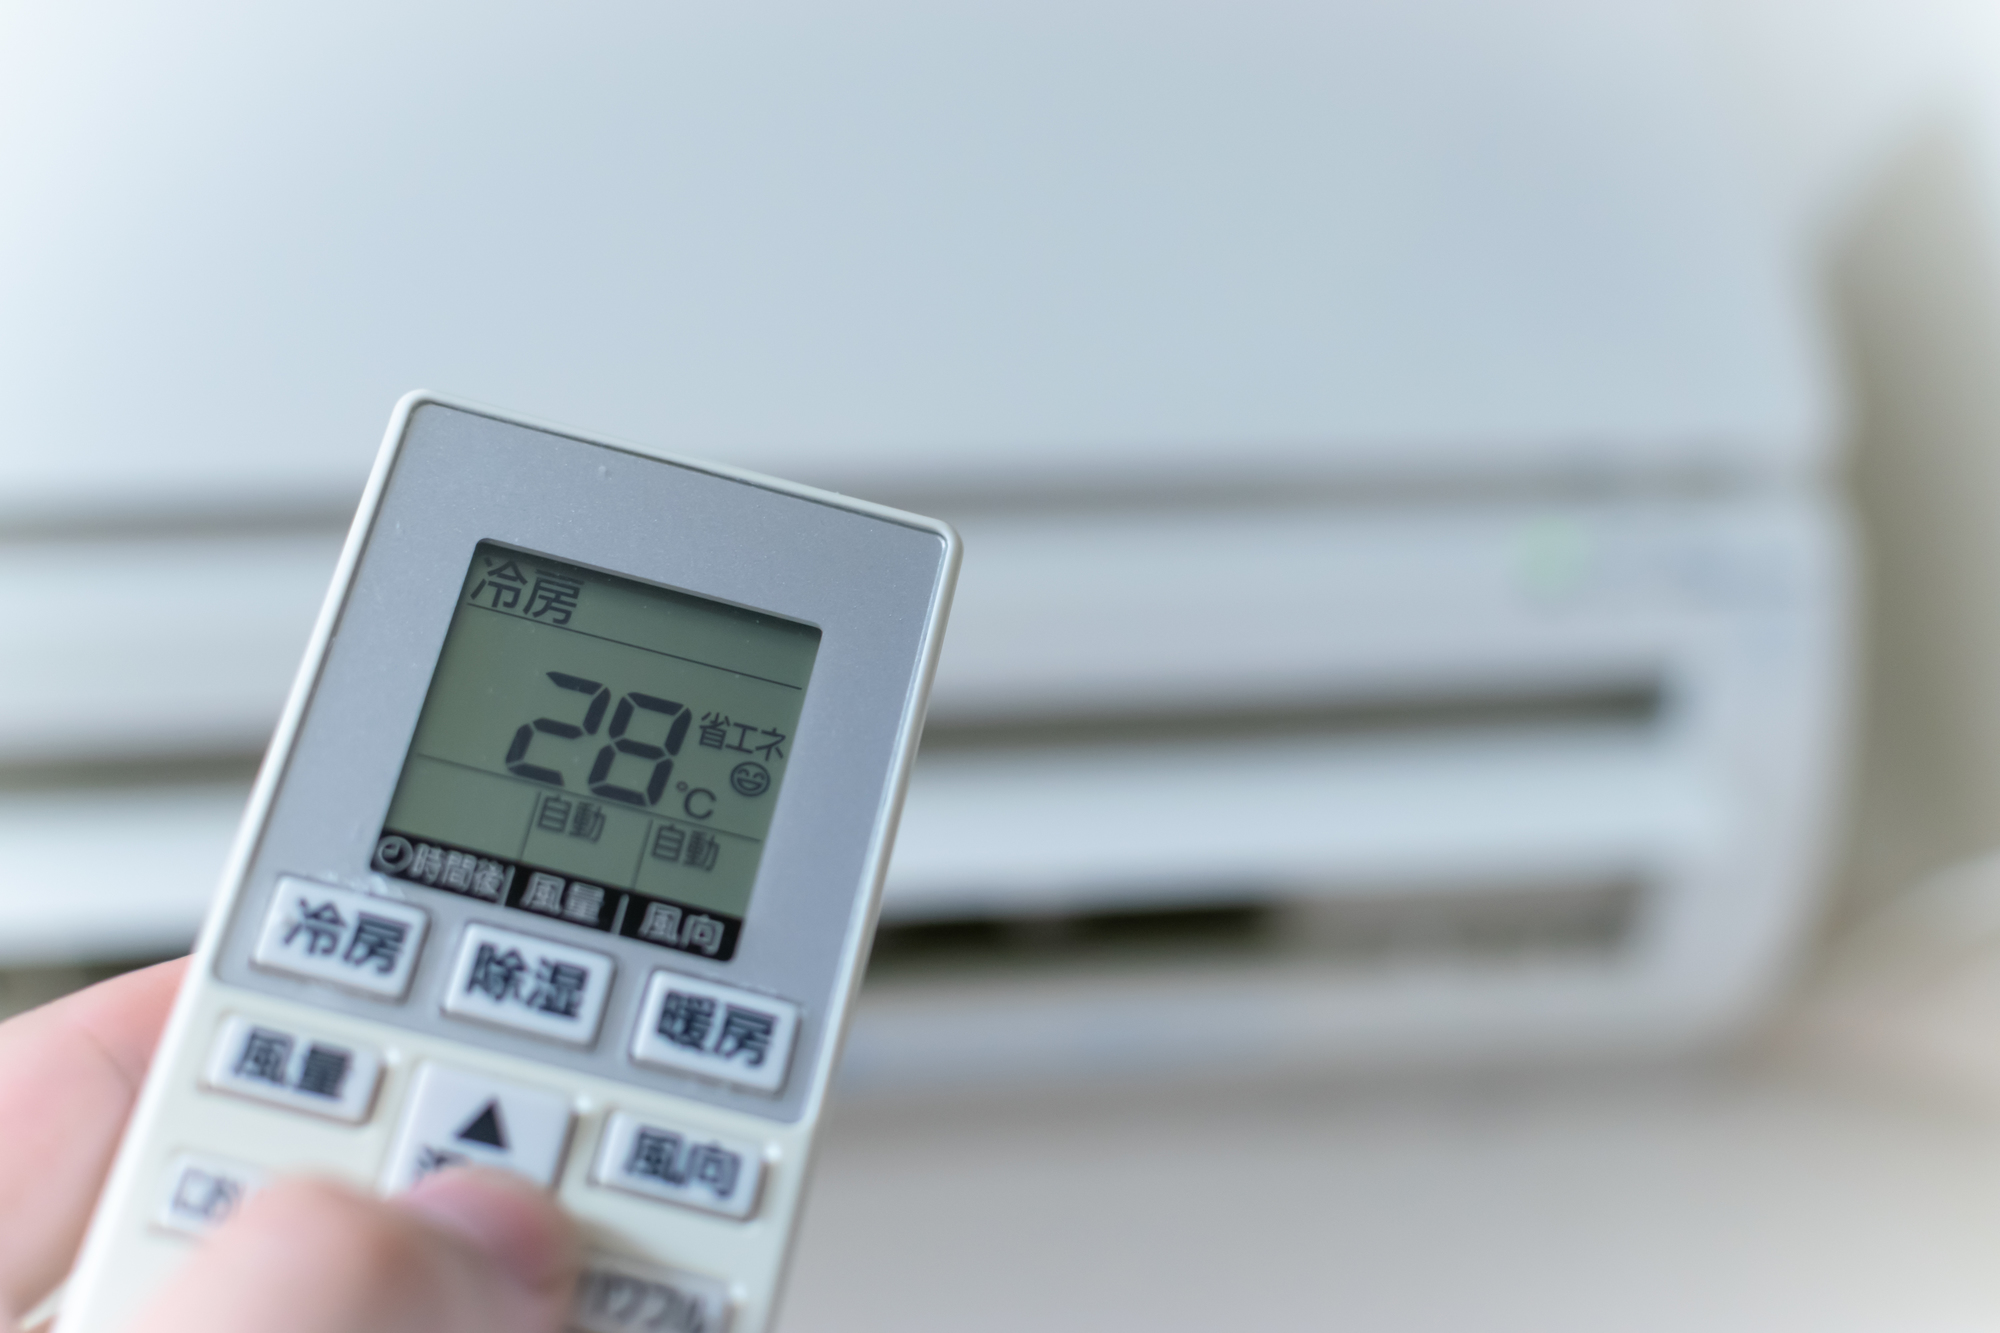 エアコン冷房の設定温度が高くても涼しく過ごす方法 28度でも快適に過ごすには 電力 ガス比較サイト エネチェンジ